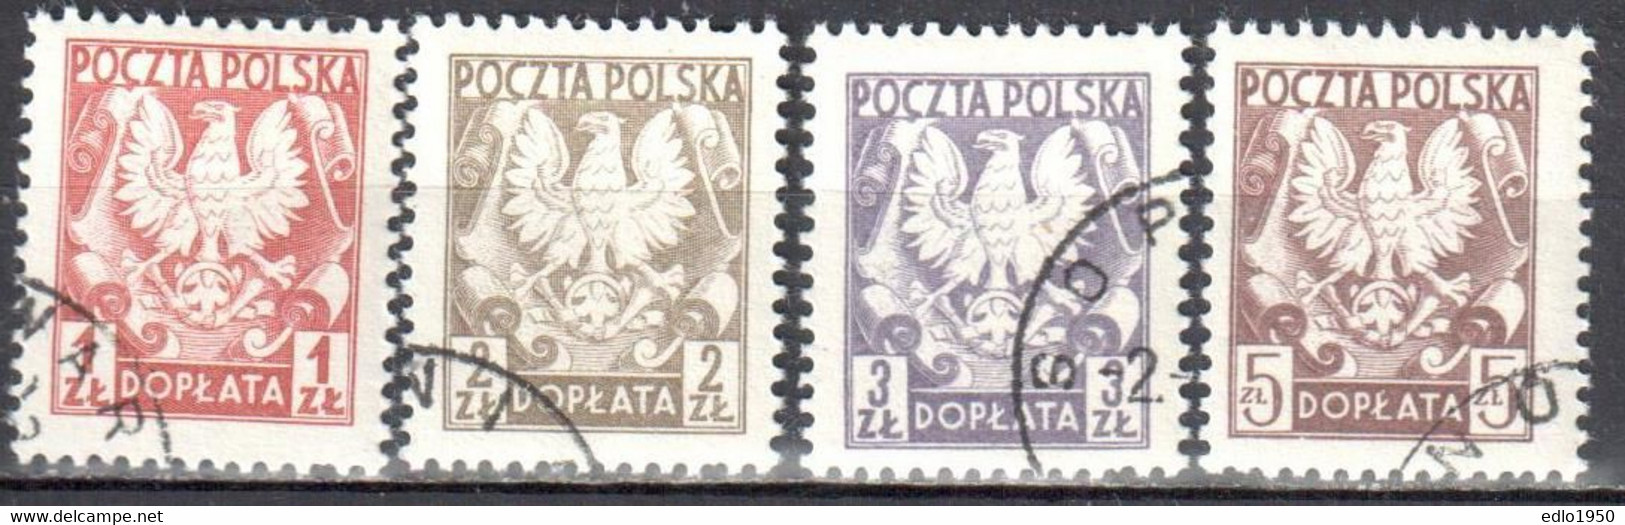 Poland 1980 - Postage Due - Mi.165-68 - Used - Taxe